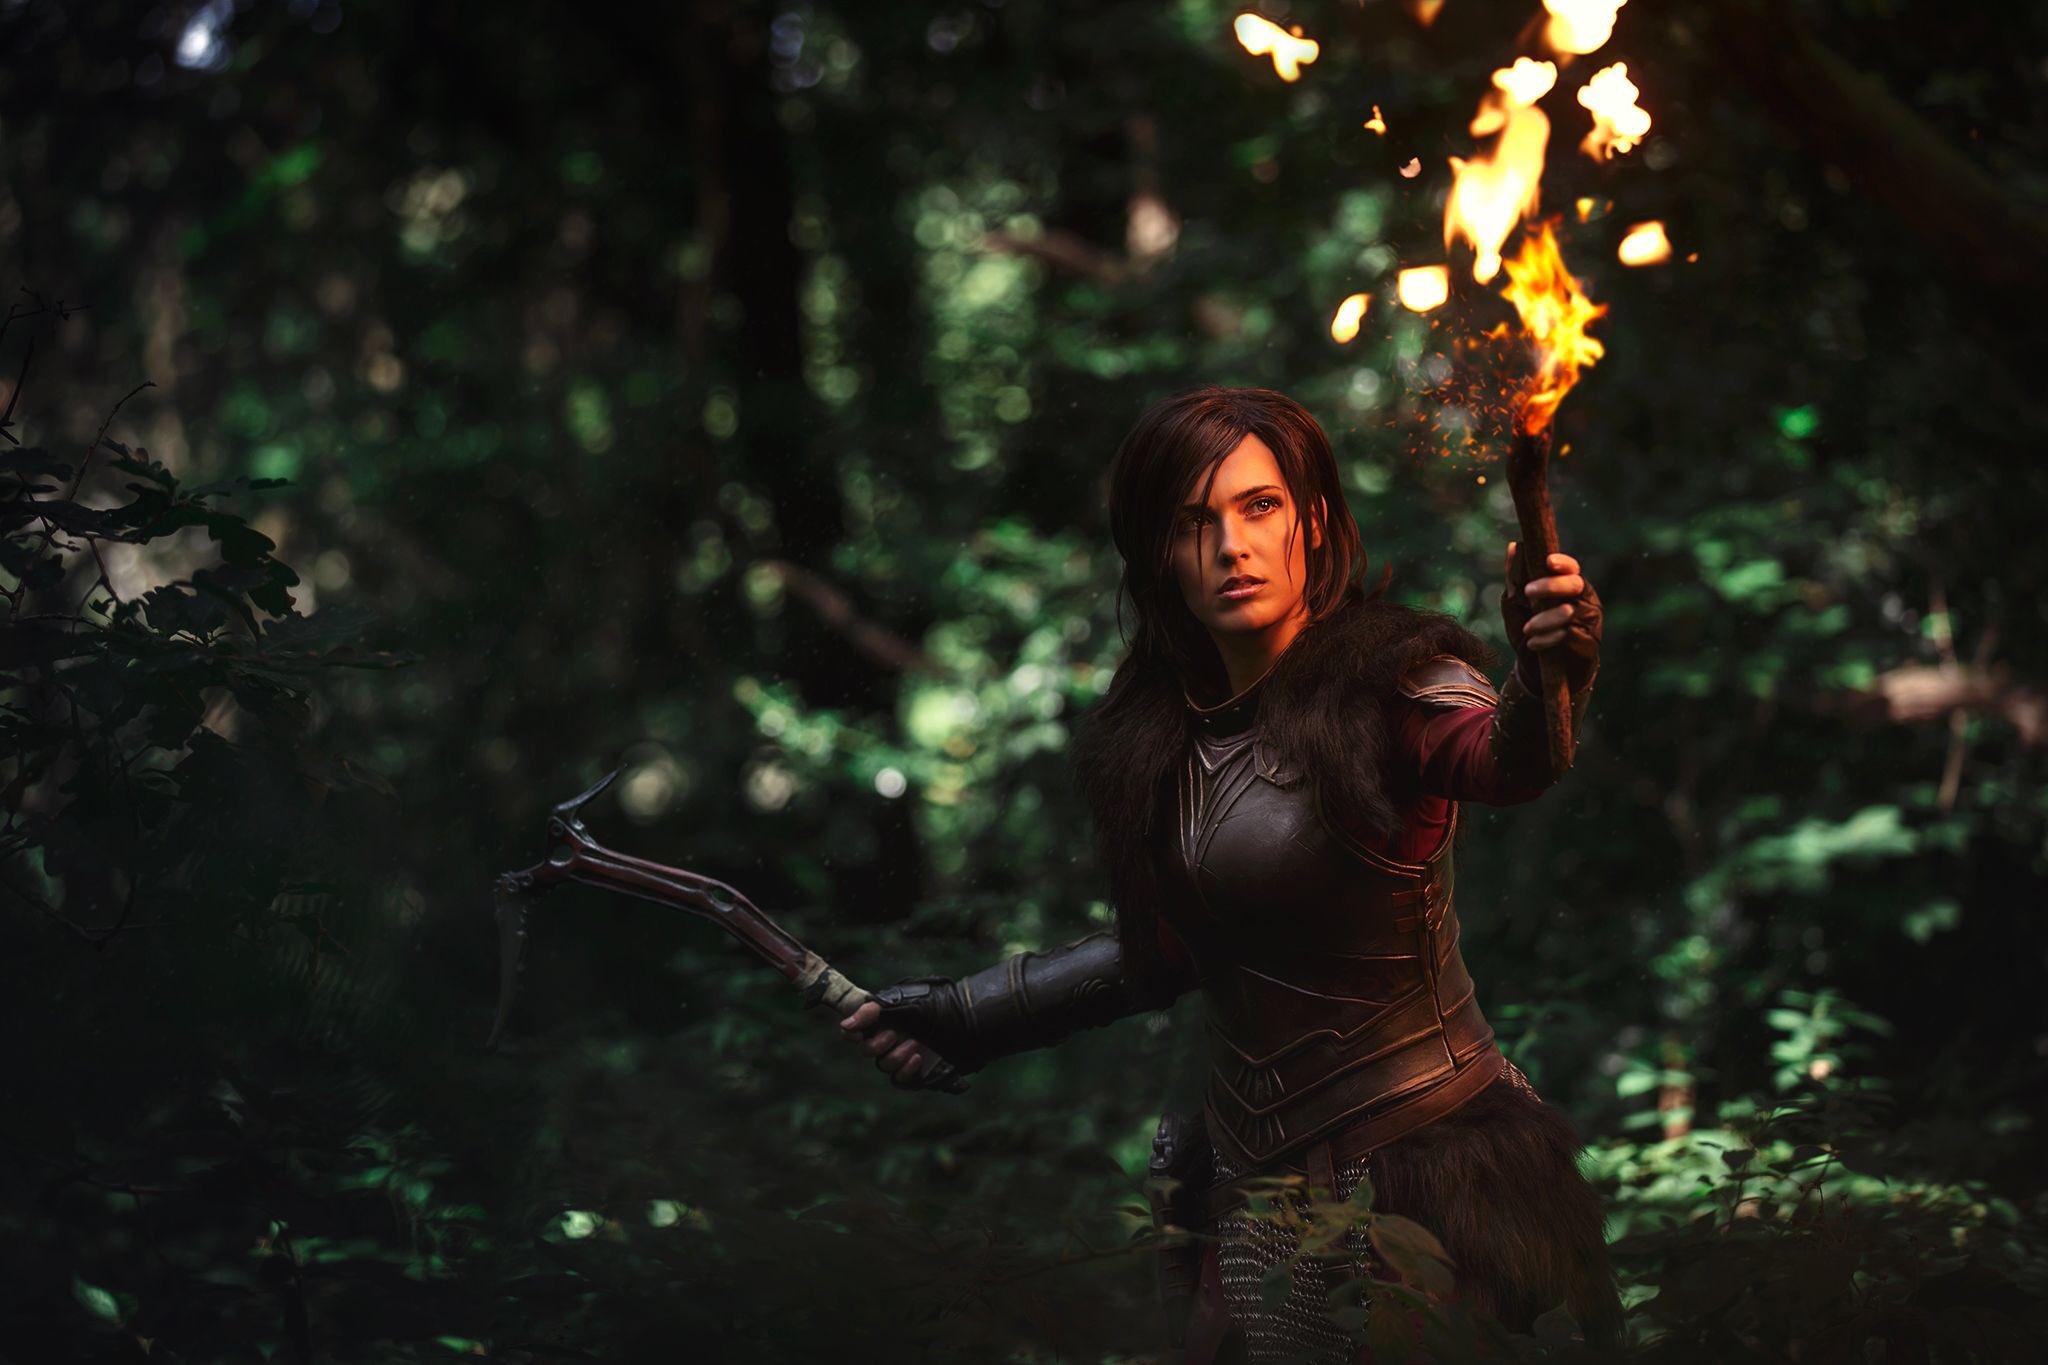 คอสเพลย์ Lara Croft ในเกม Tomb Raider จาก EvilCleverDog